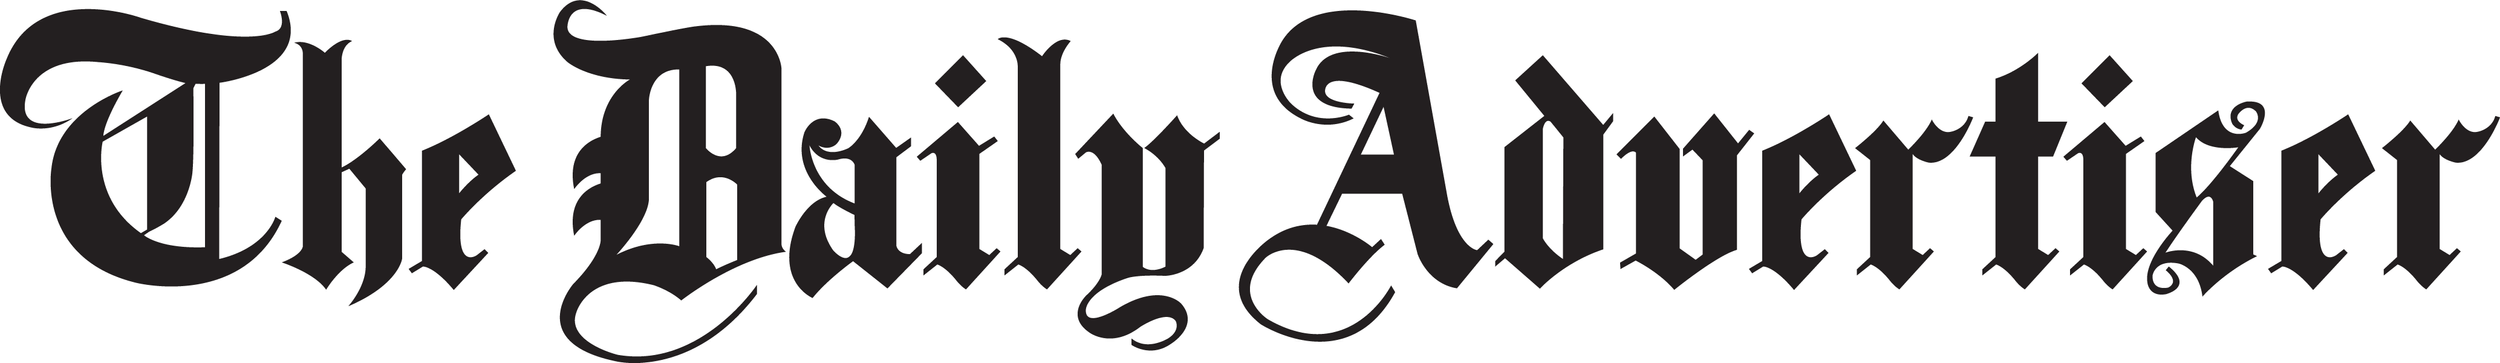 dailyadvertiser-logo.png